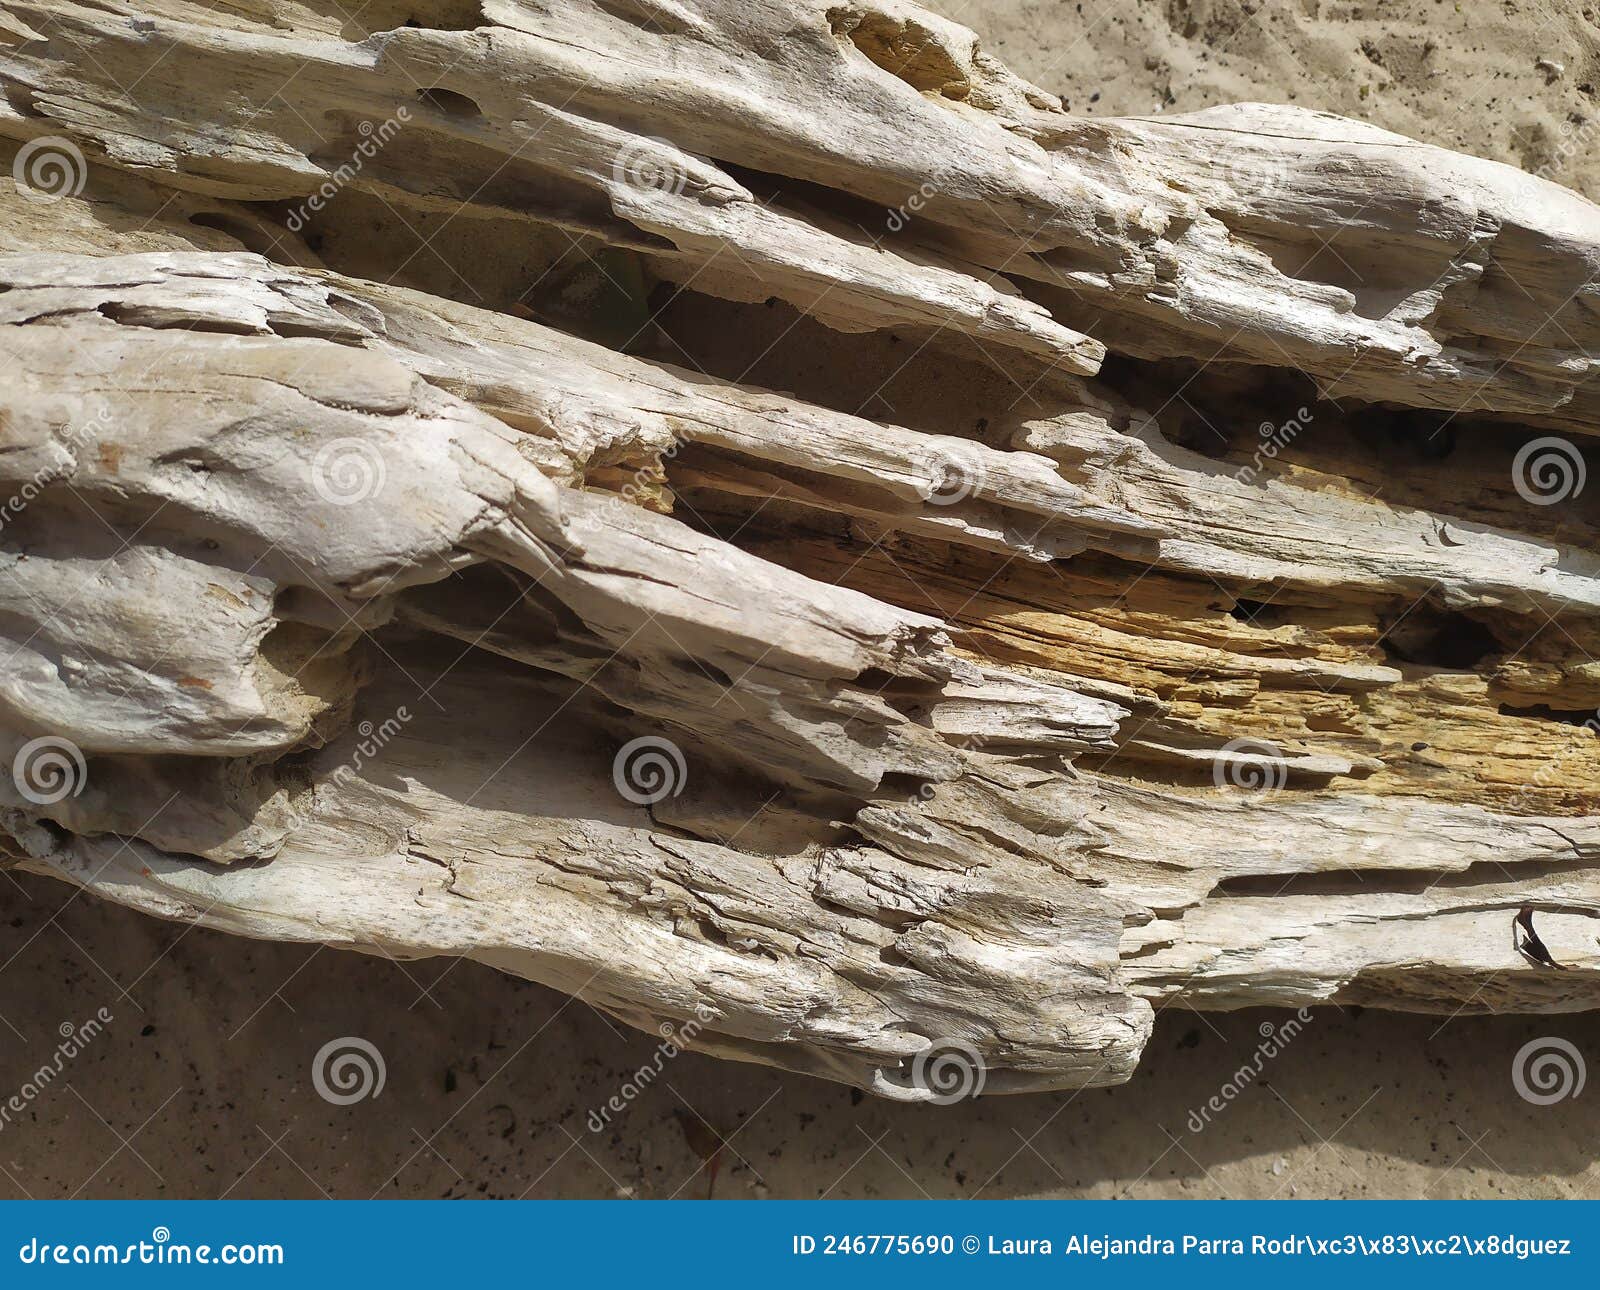 texture of a broken log in the sand. textura de un tronco roto en la arena